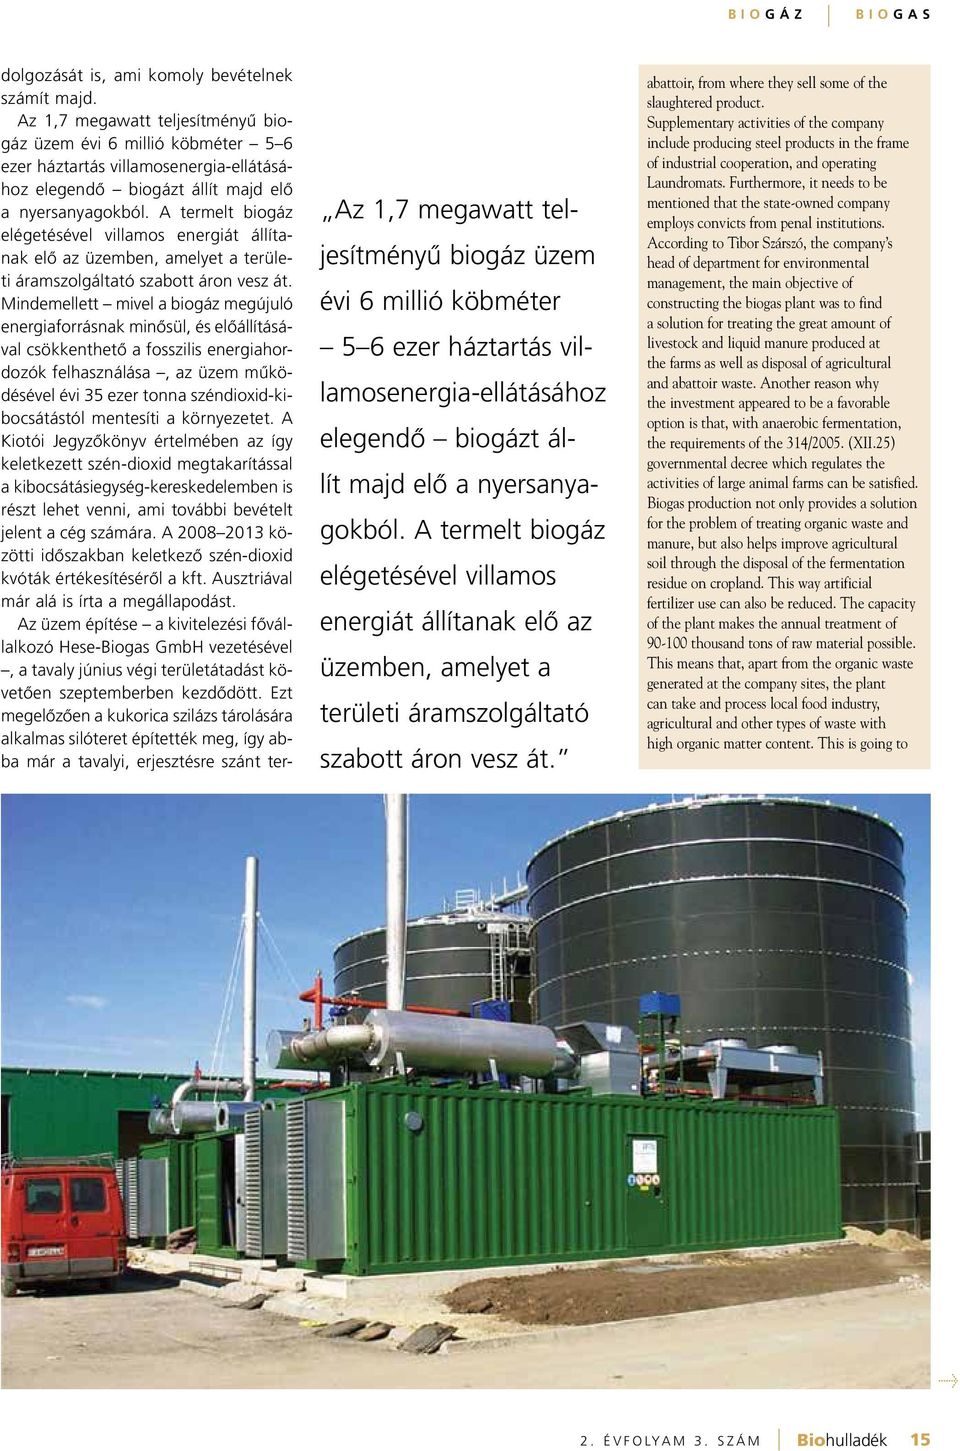 A termelt biogáz elégetésével villamos energiát állítanak elô az üzemben, amelyet a területi áramszolgáltató szabott áron vesz át.